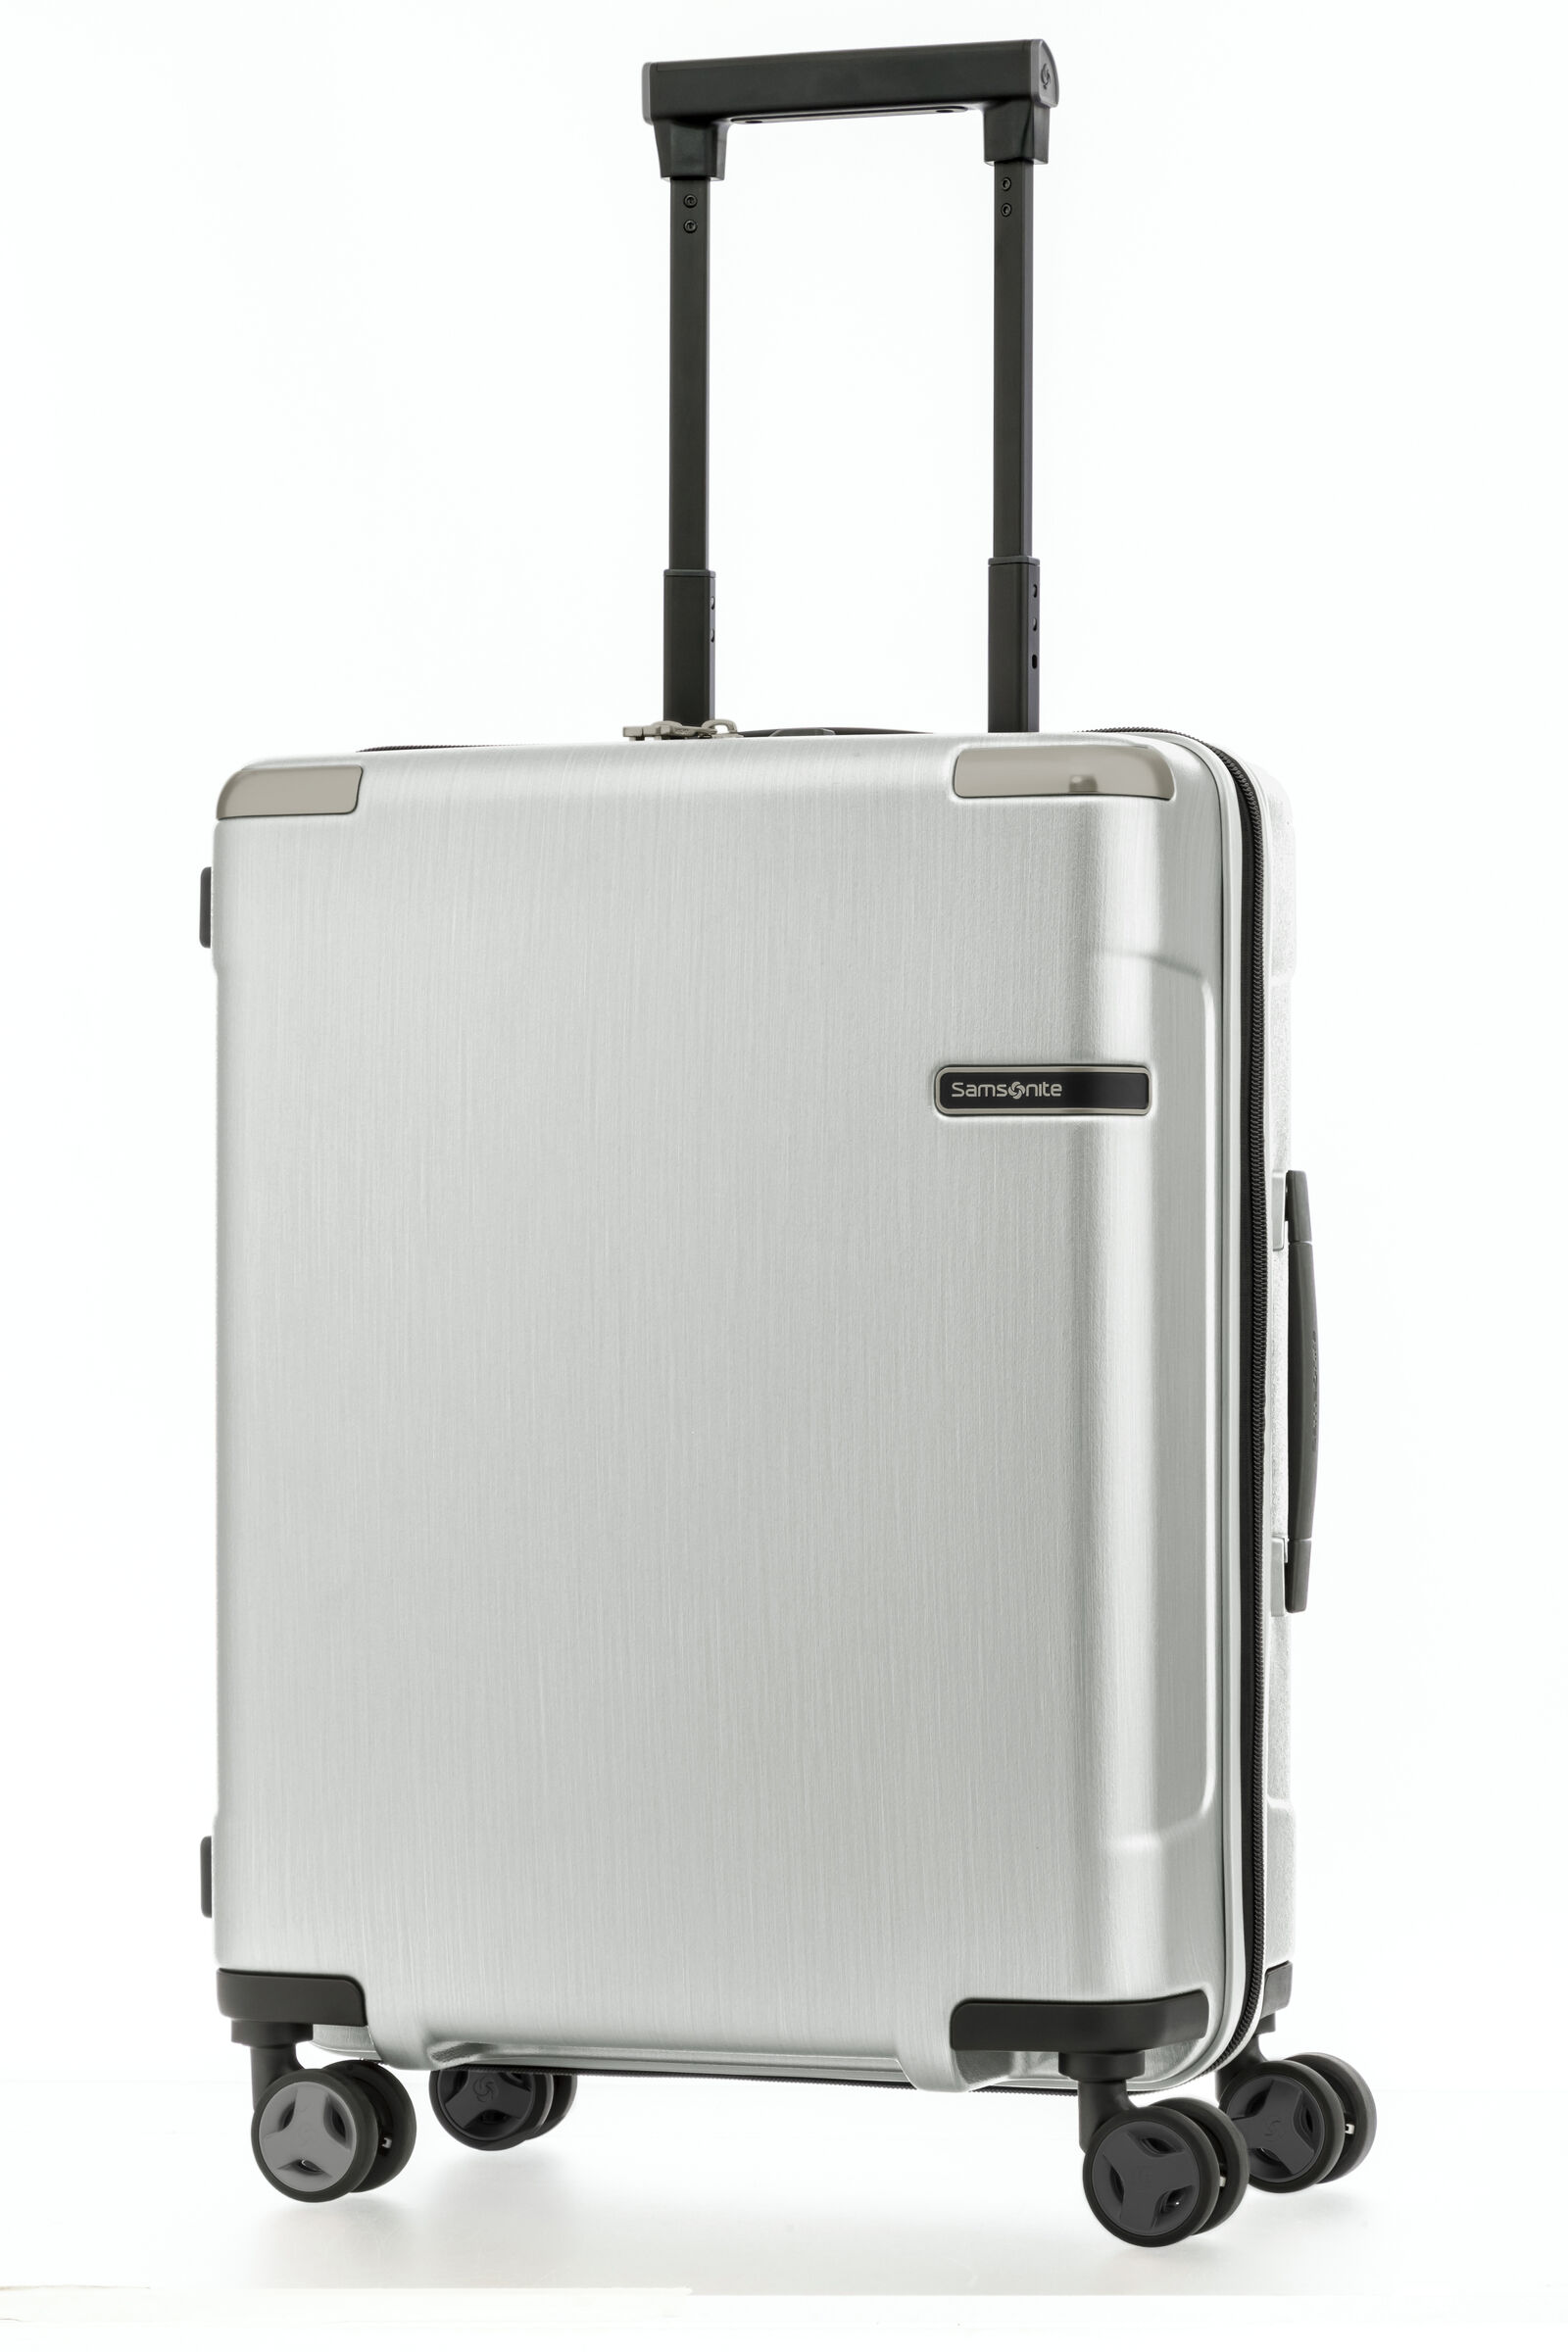 wizz air 20 kg baggage price